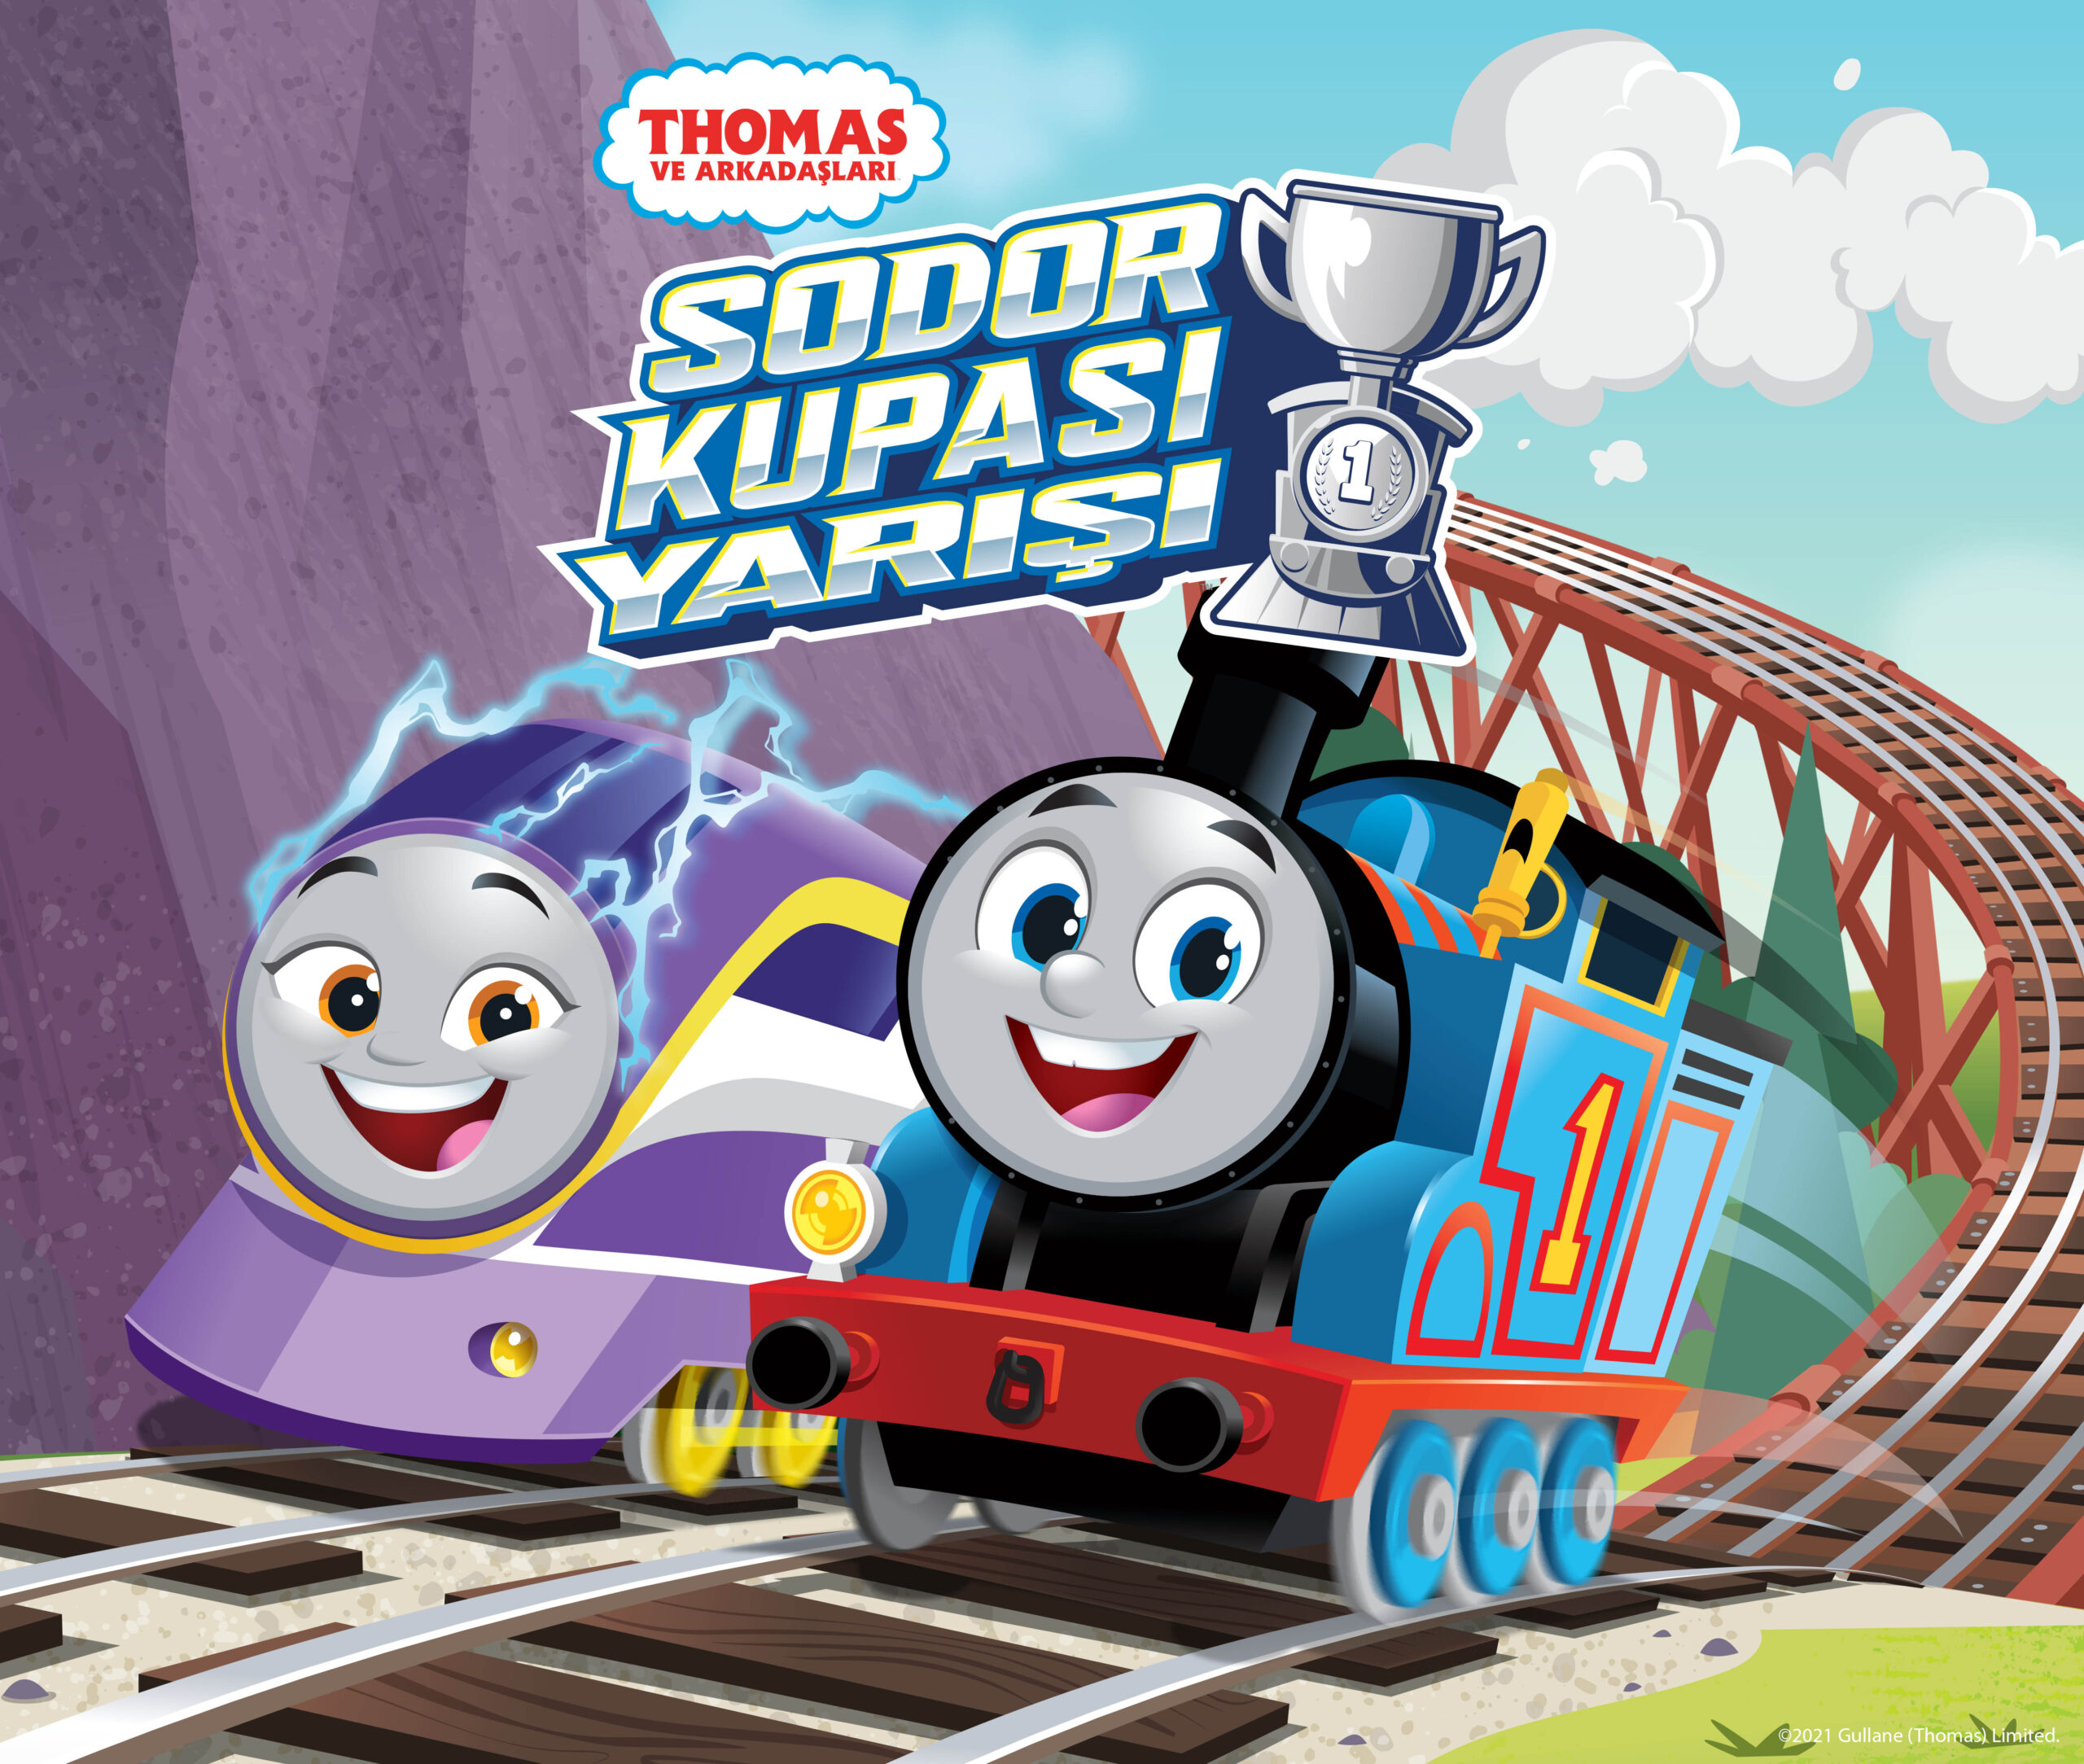  Thomas ve Arkadaşları Yeni Sezonu ile Cartoon Network’te